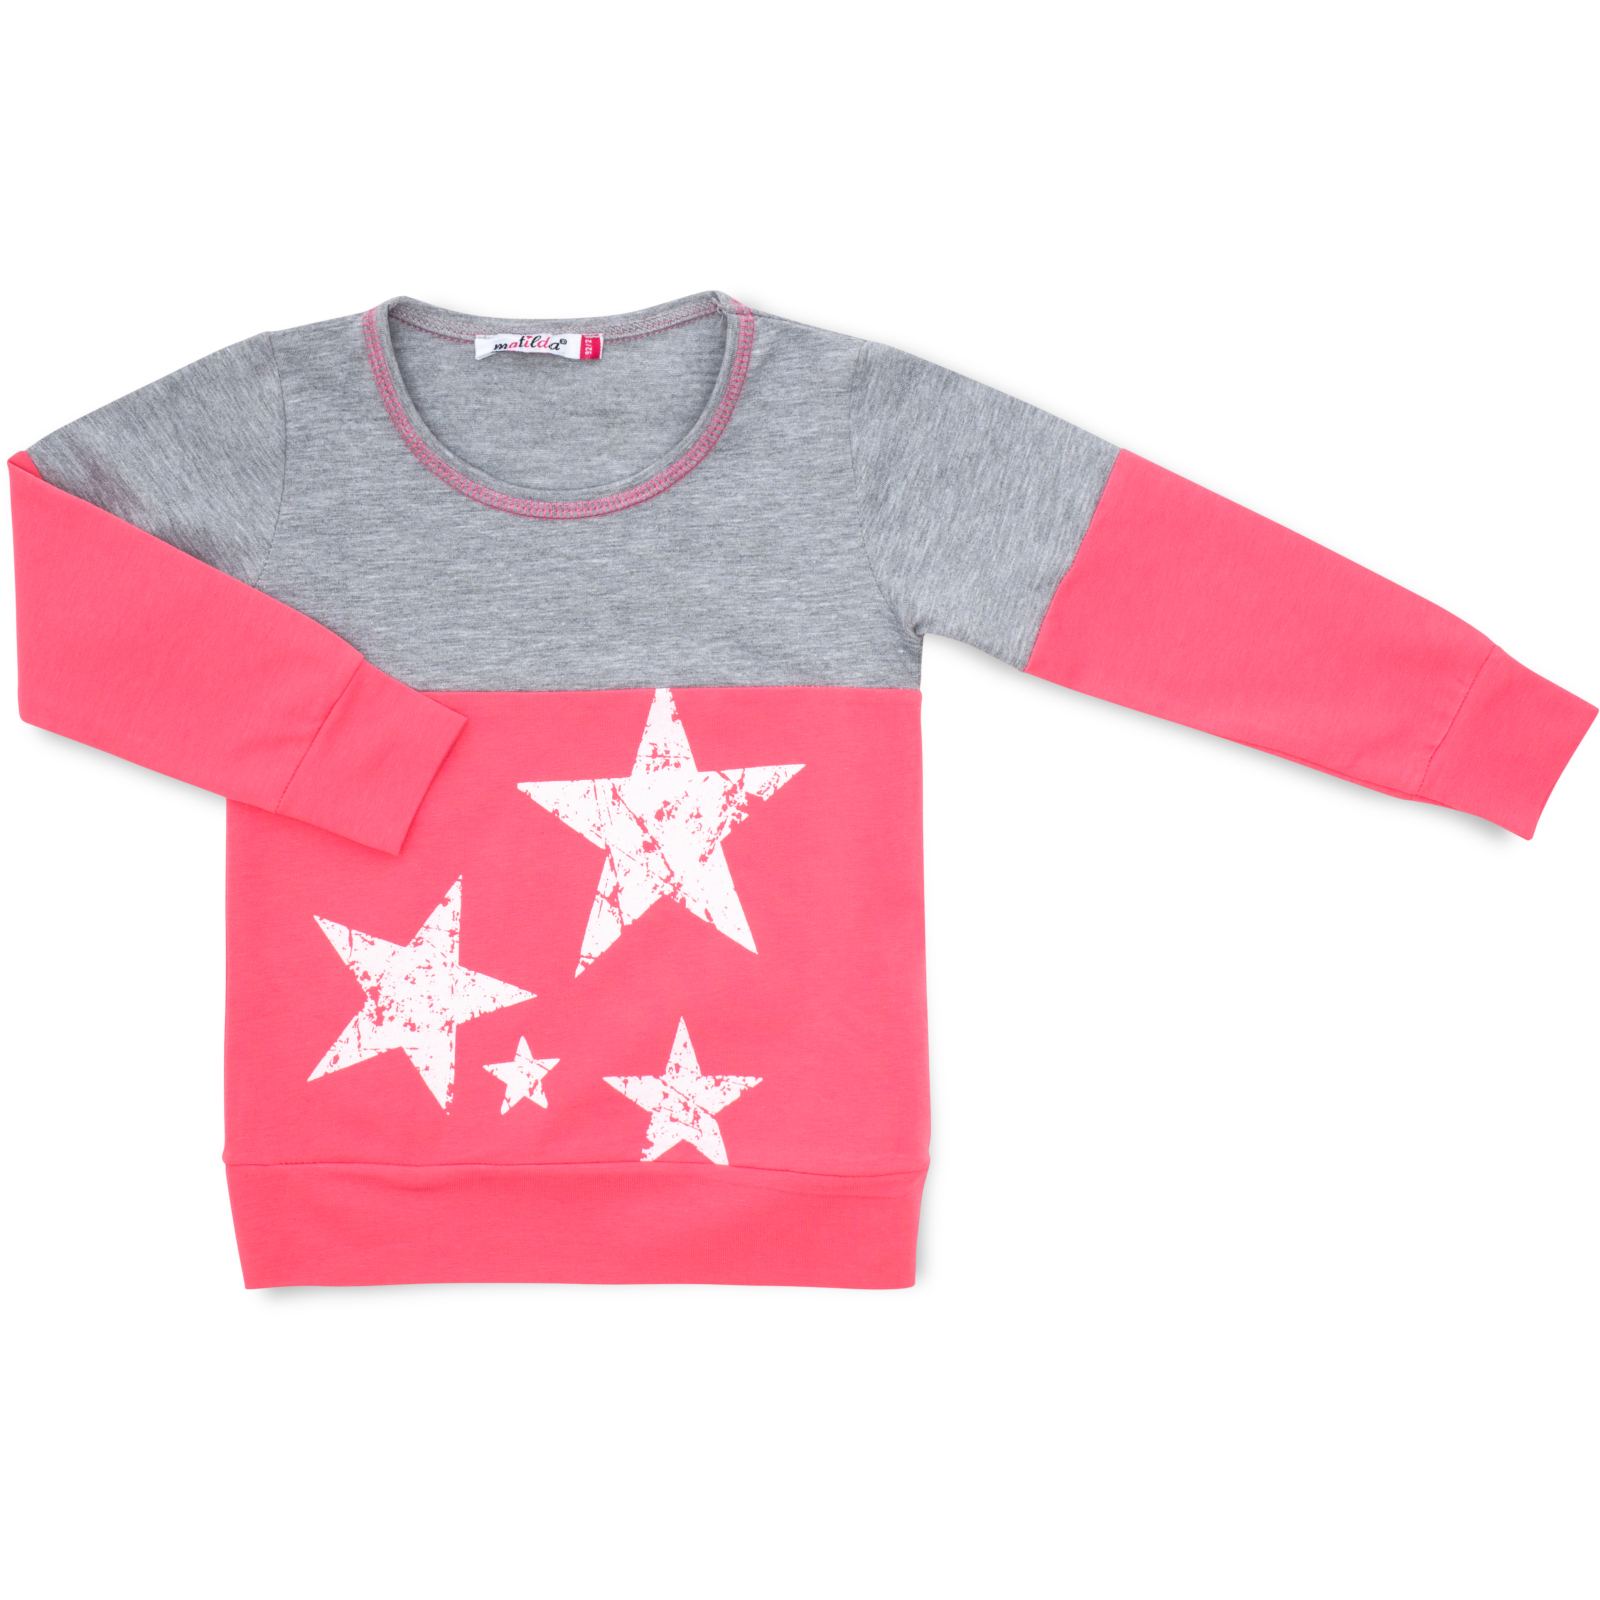 Пижама Matilda со звездочками (7167-104G-pink) изображение 2